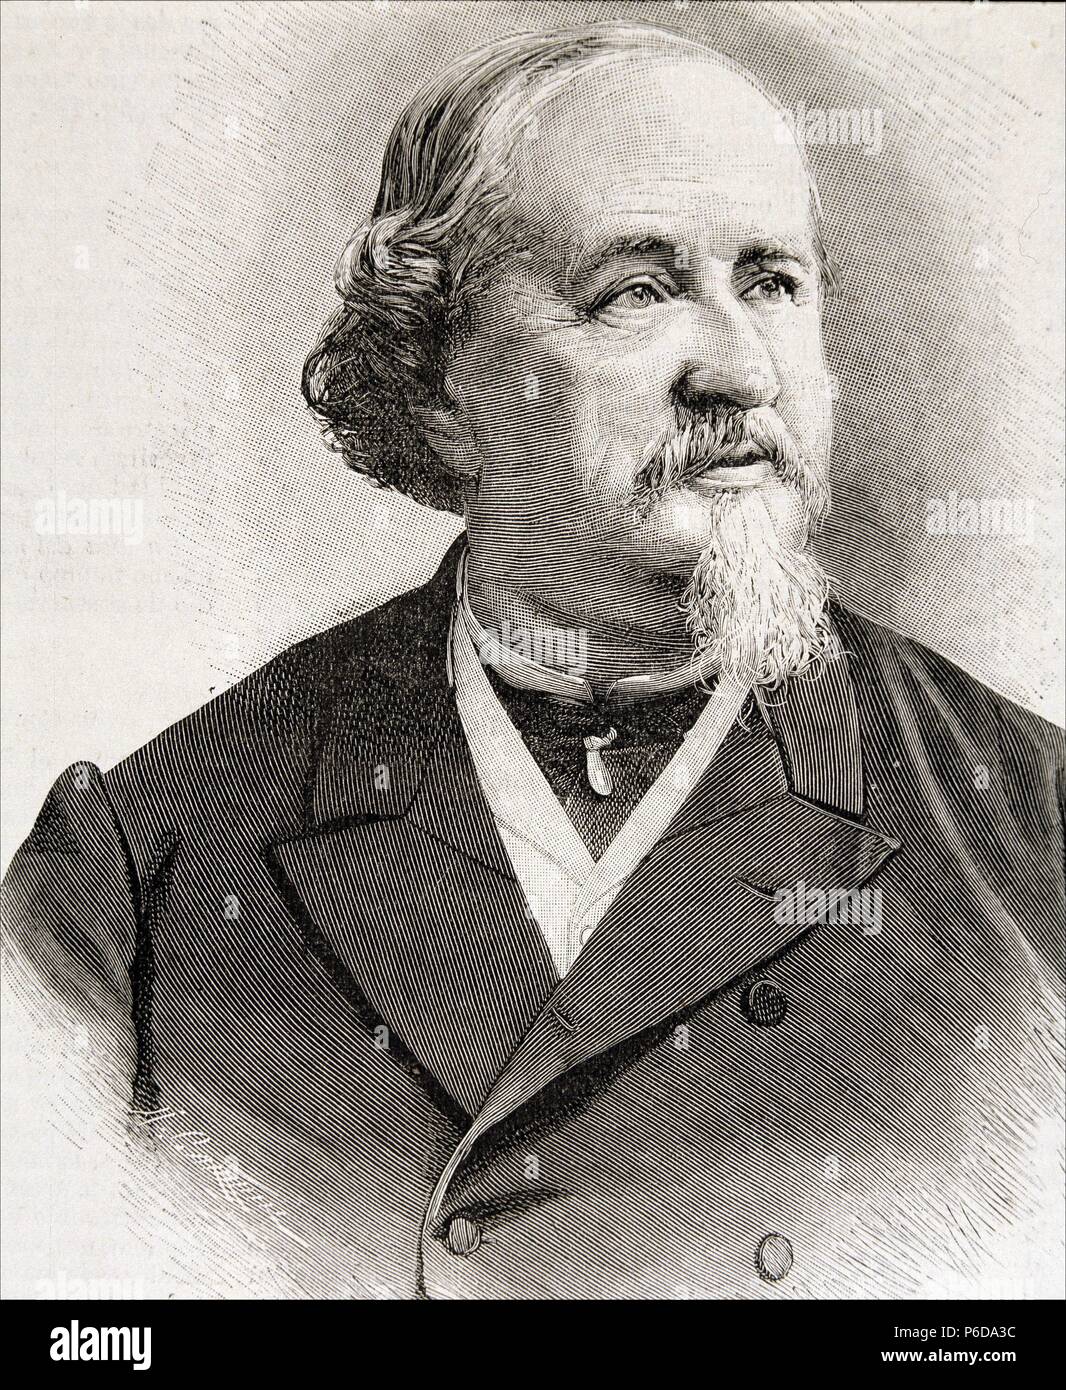 ARRIETA , EMILIO. COMPOSITOR ESPAÑOL. PUENTE DE LA REINA 1823 - 1894. GRABADO RETRATO. ILUSTRACION ESPAÑOLA Y AMERICANA. Stock Photo